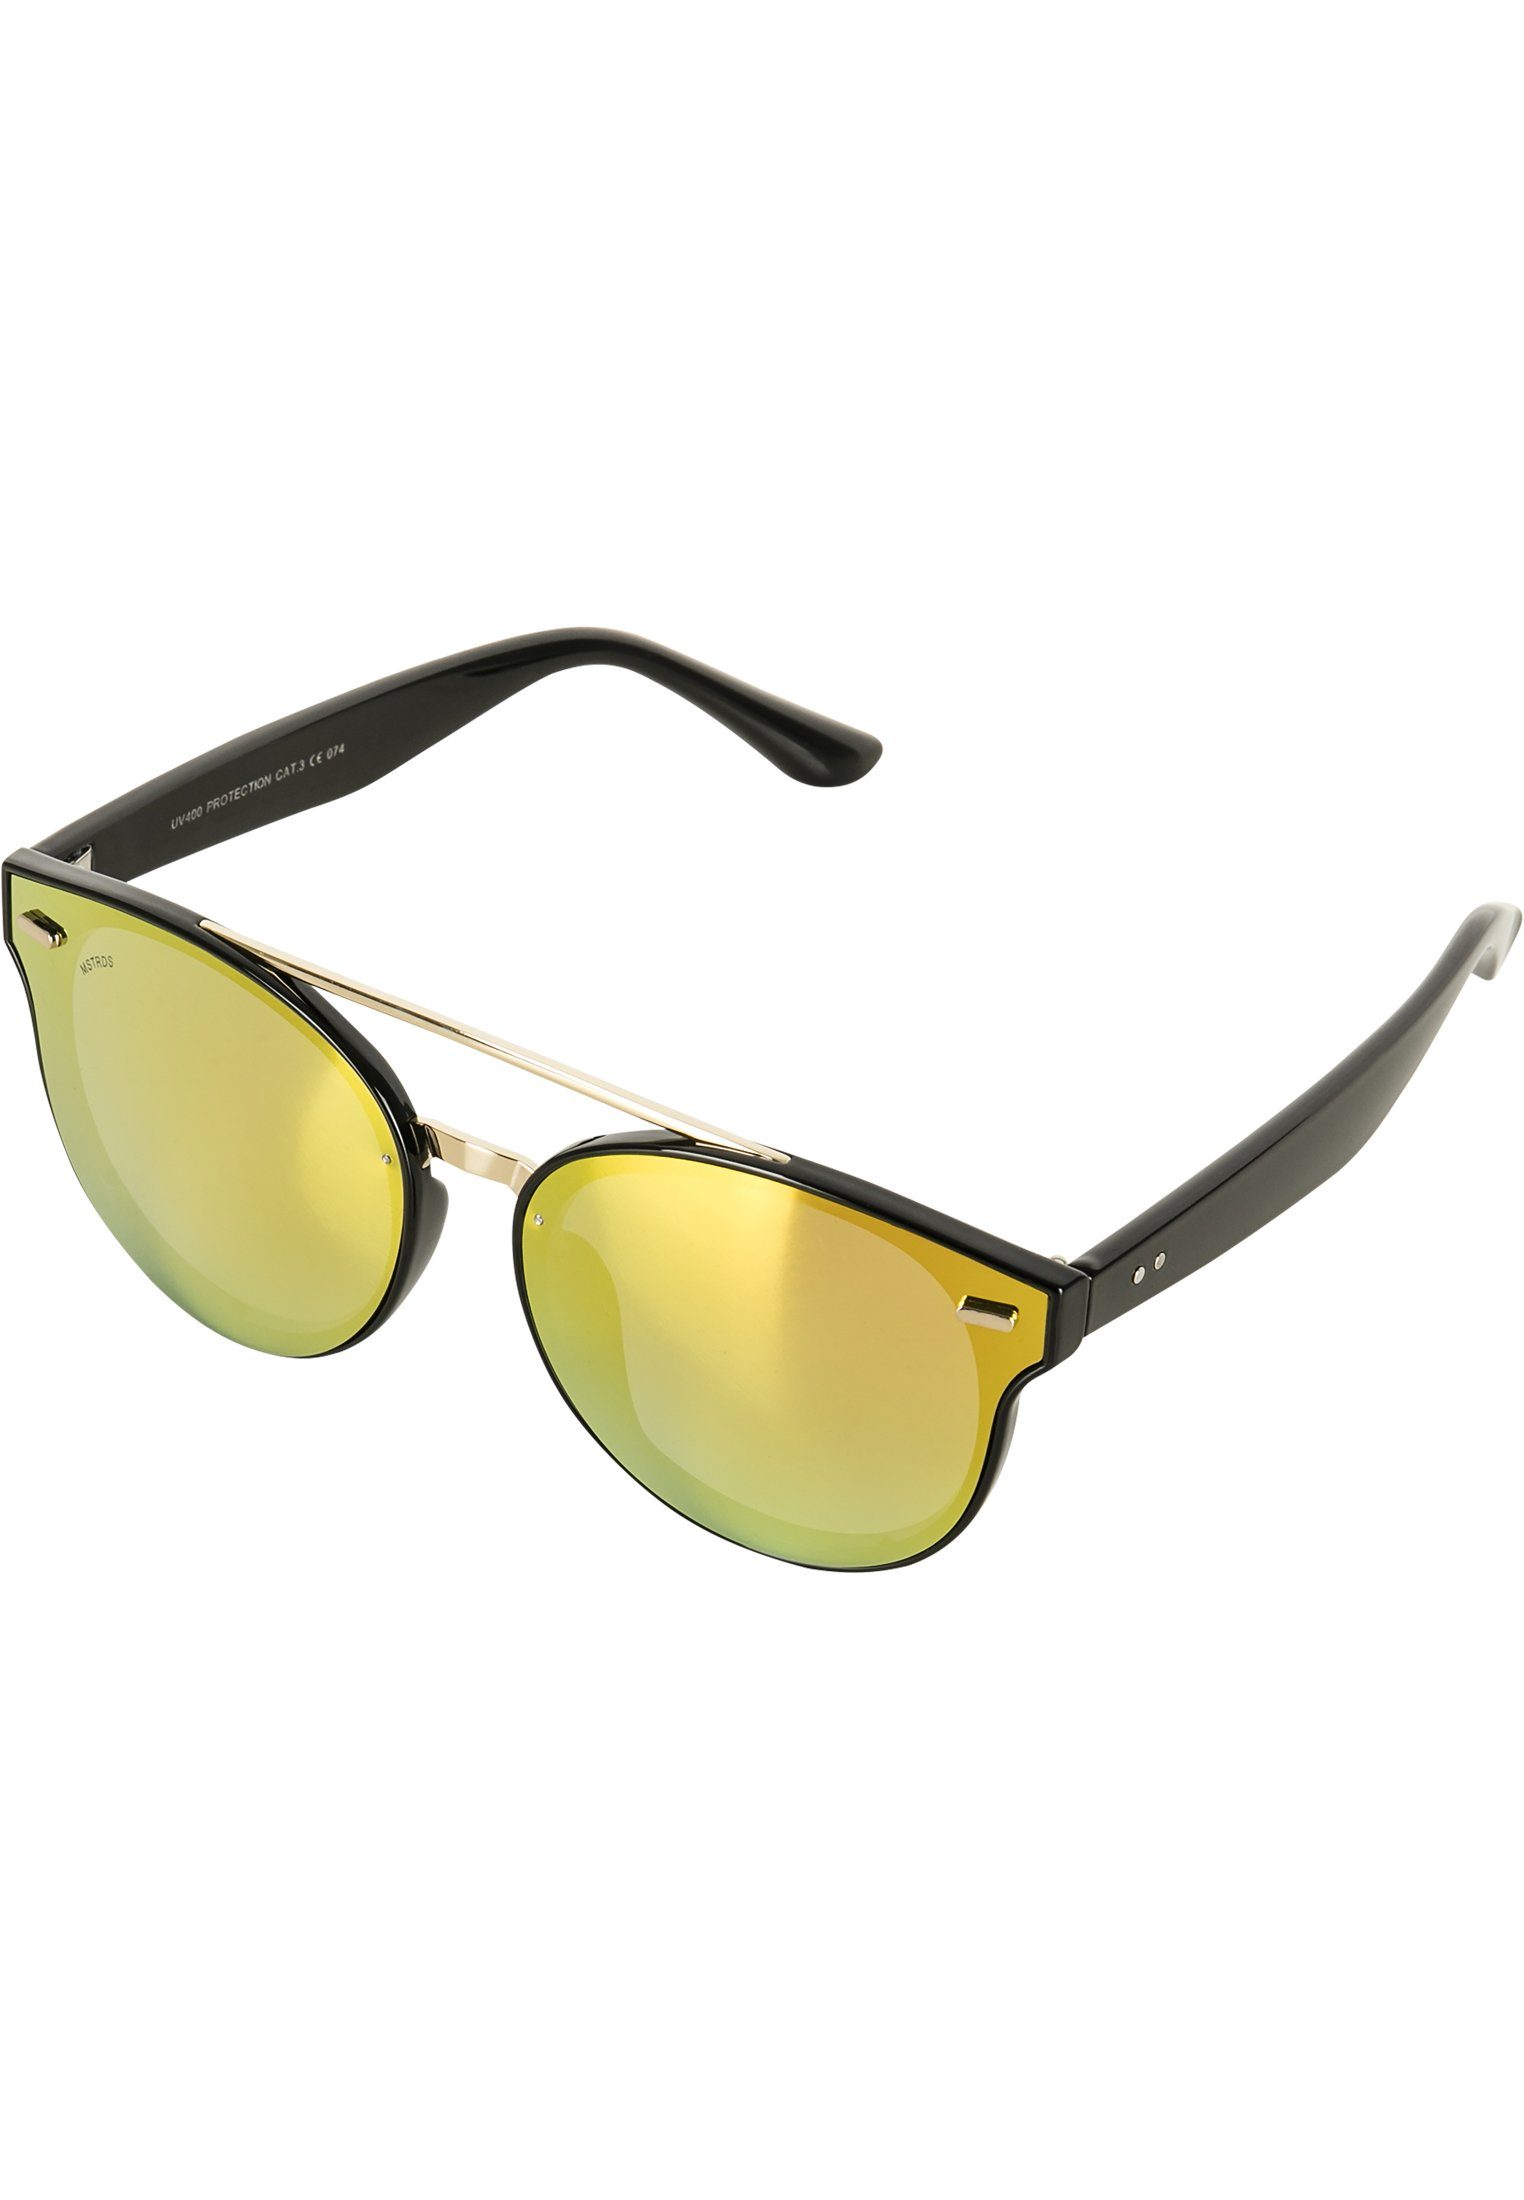 Sunglasses MSTRDS Sonnenbrille June Accessoires